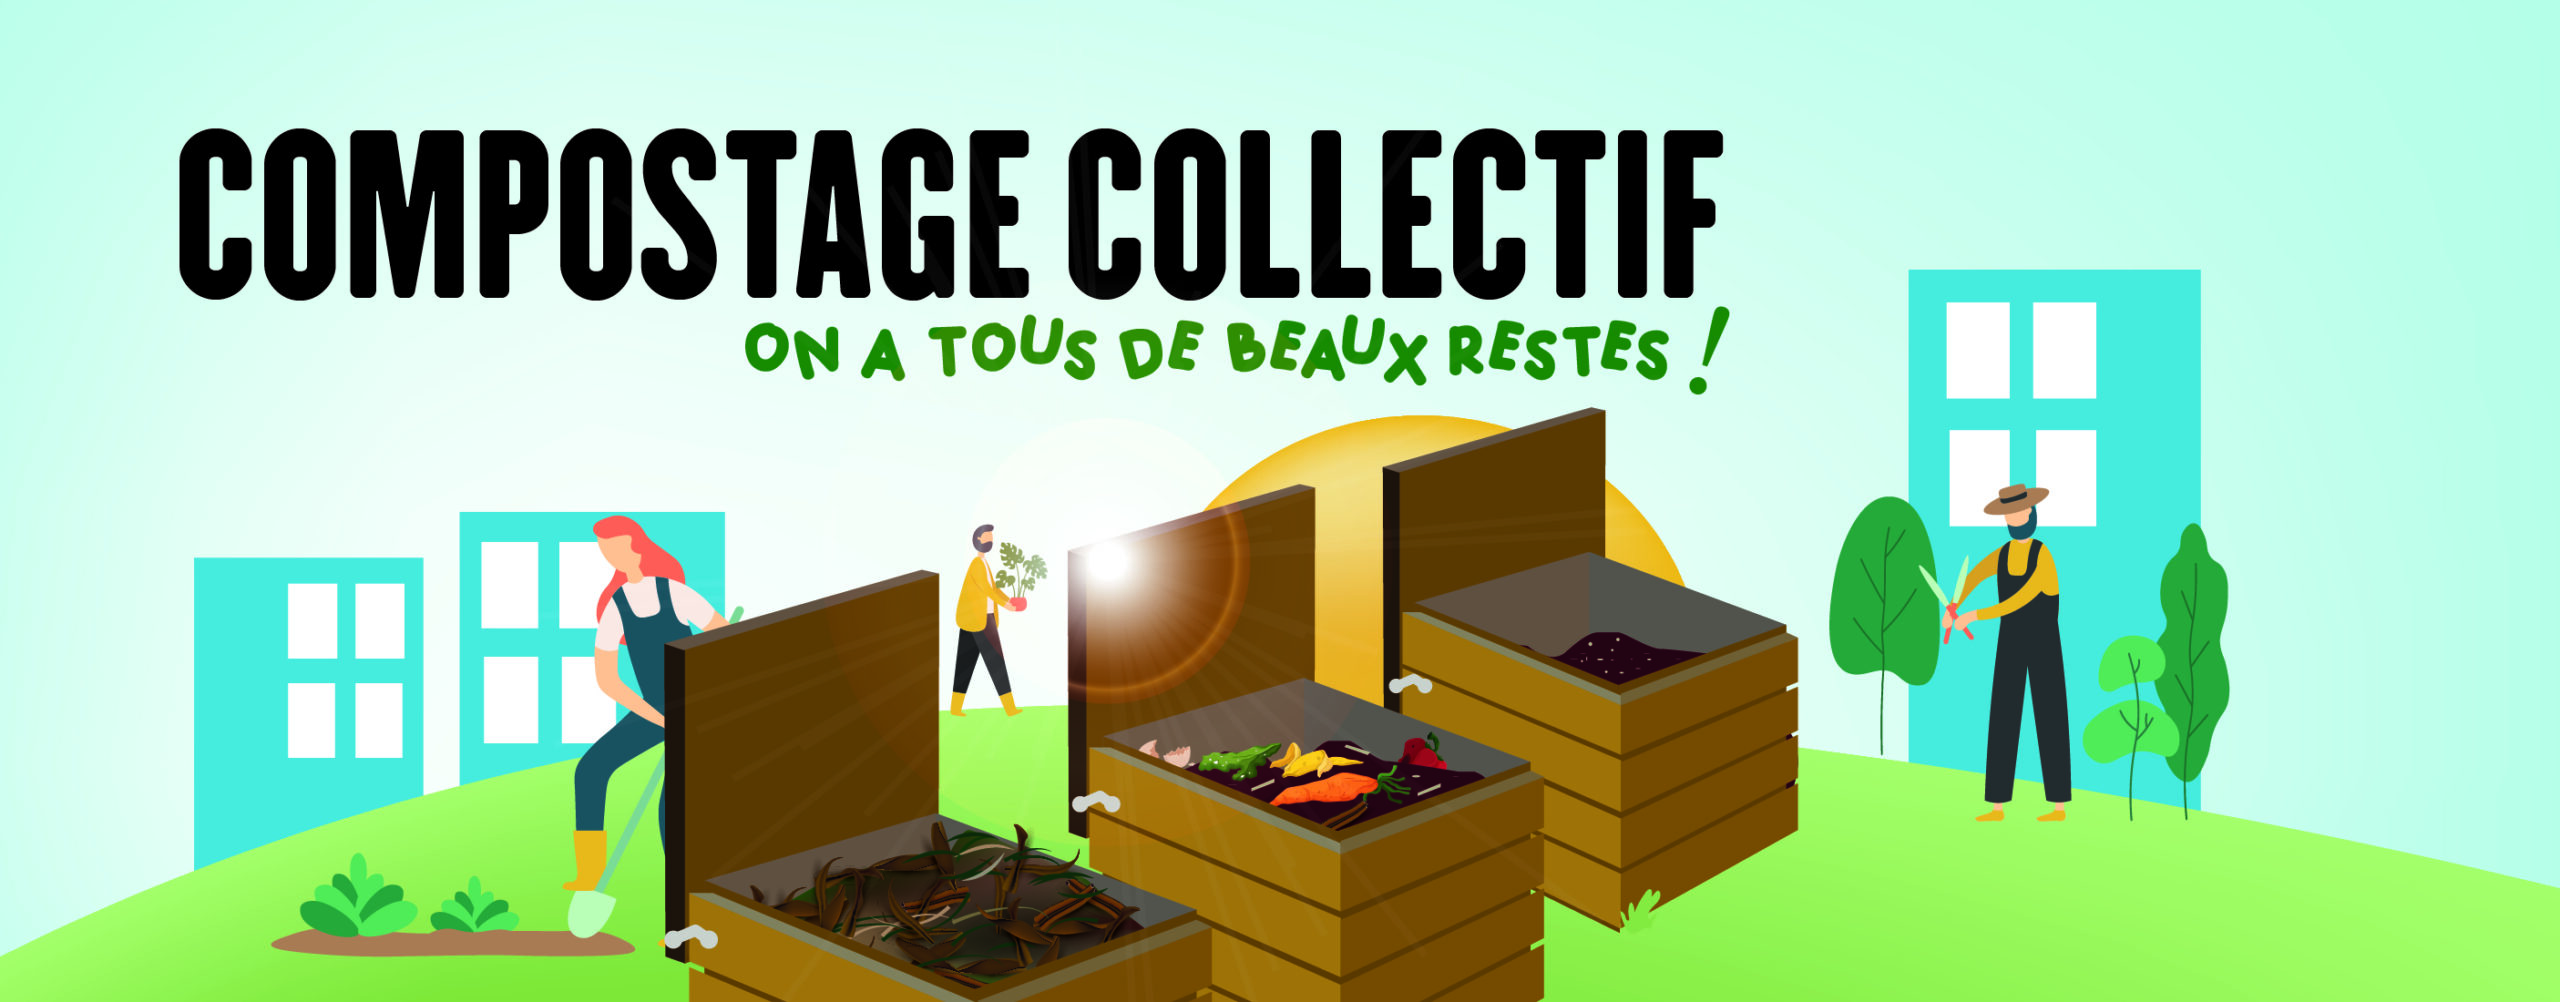 J’ai un projet de compostage partagé - Mâconnais-Beaujolais Agglomération